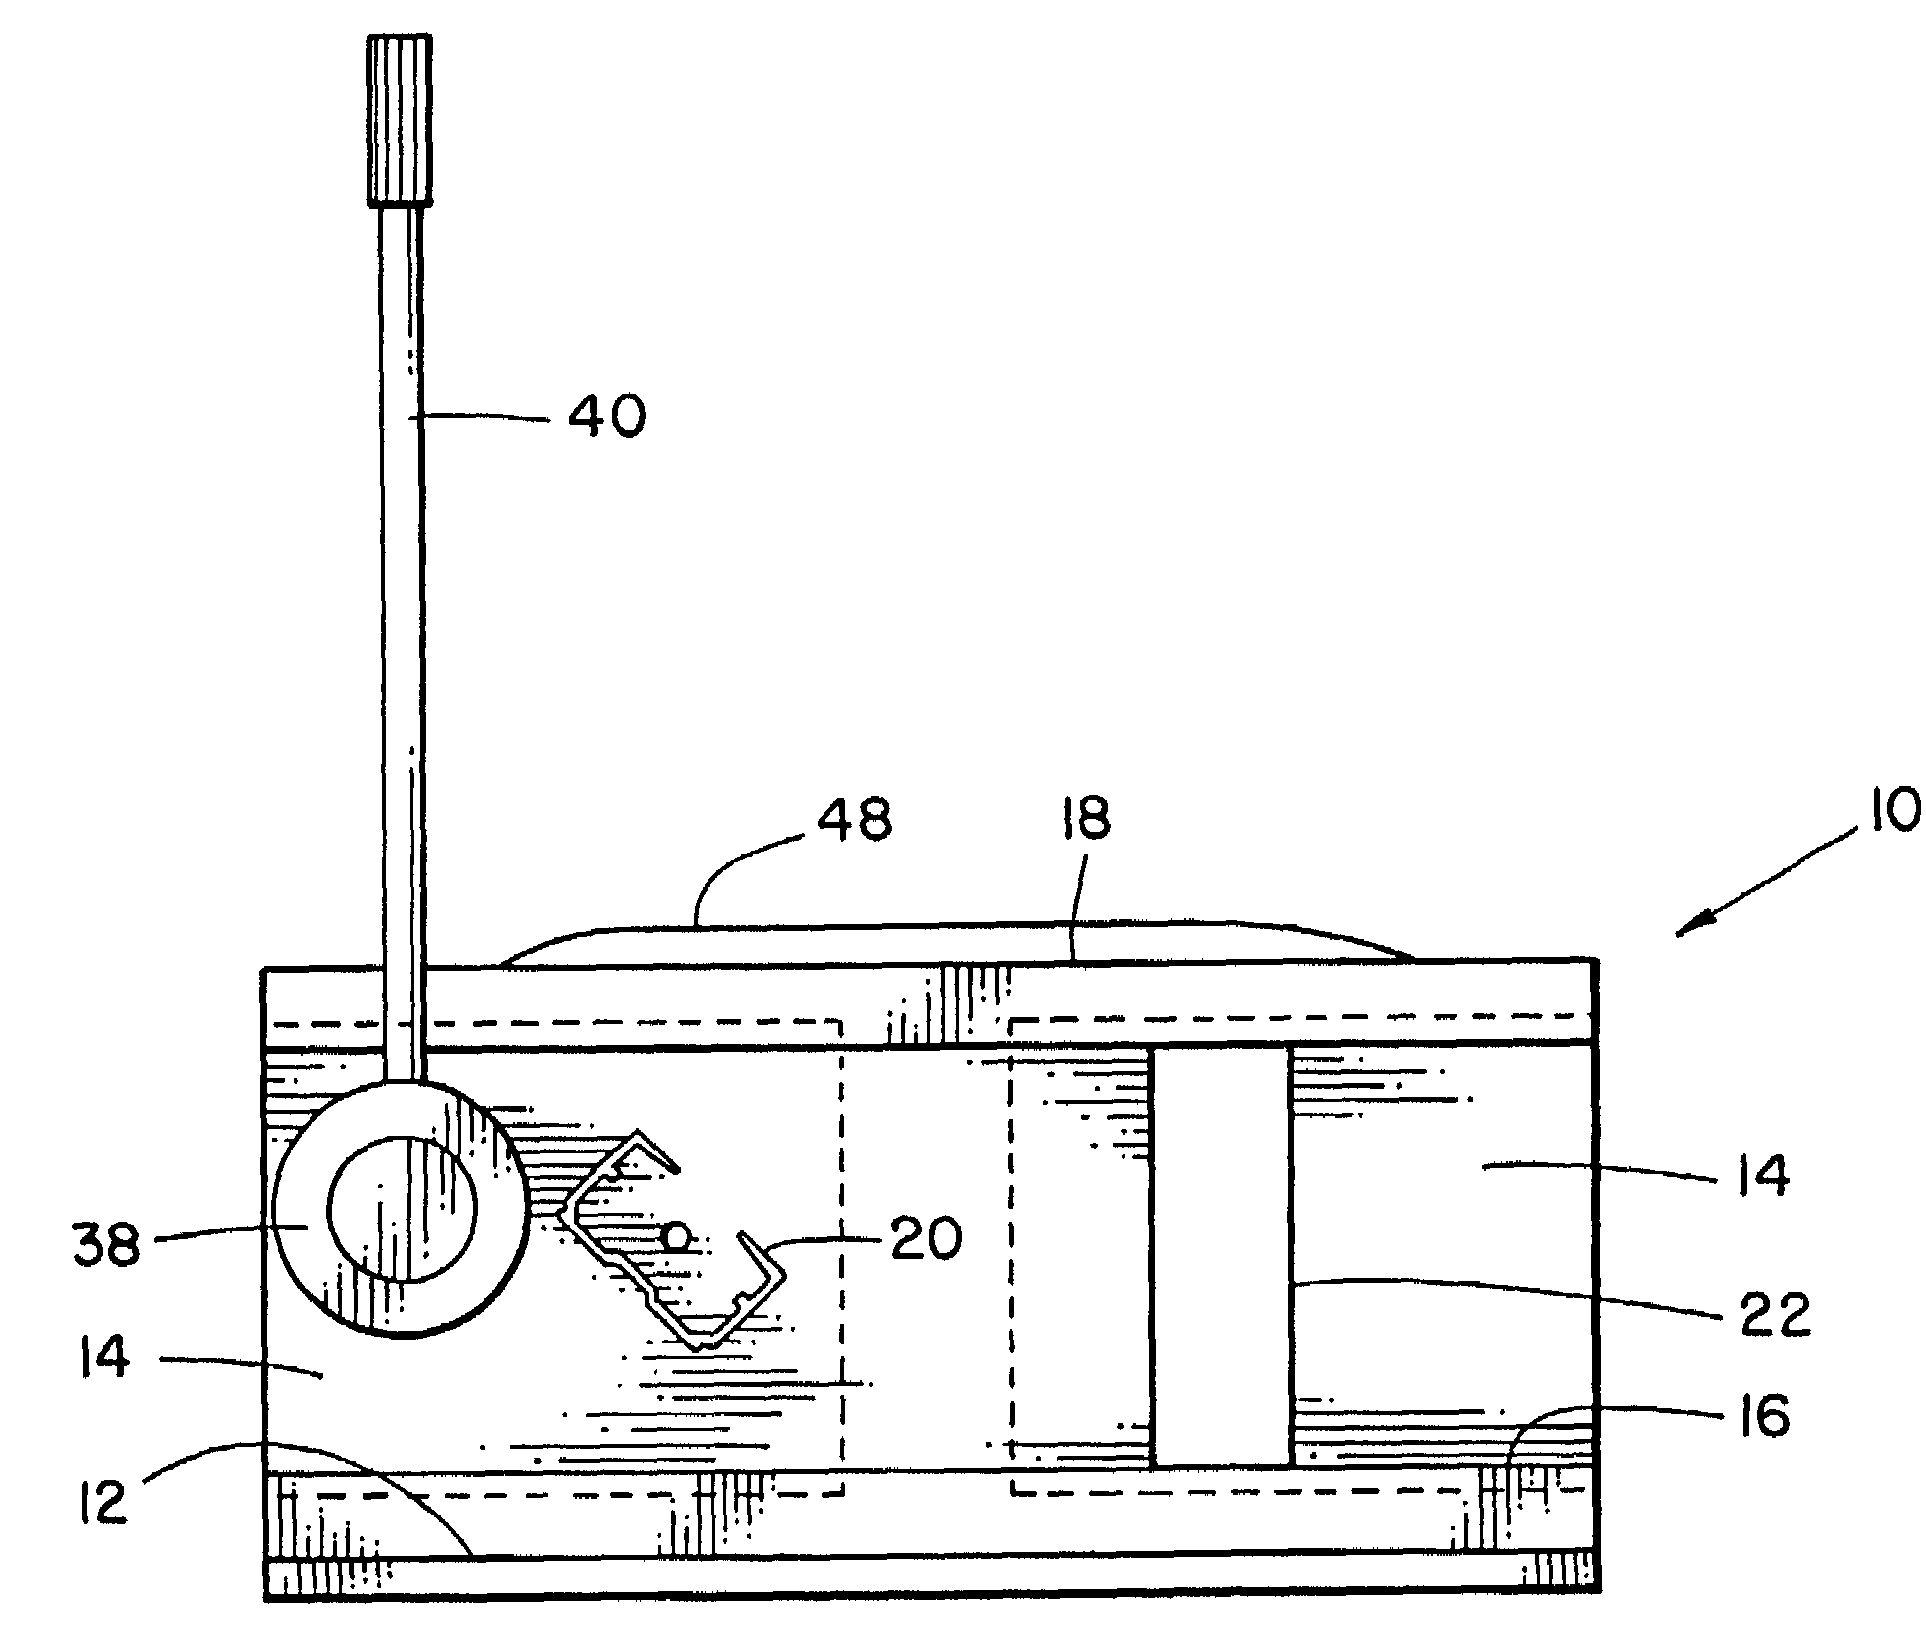 Single plate cut down apparatus